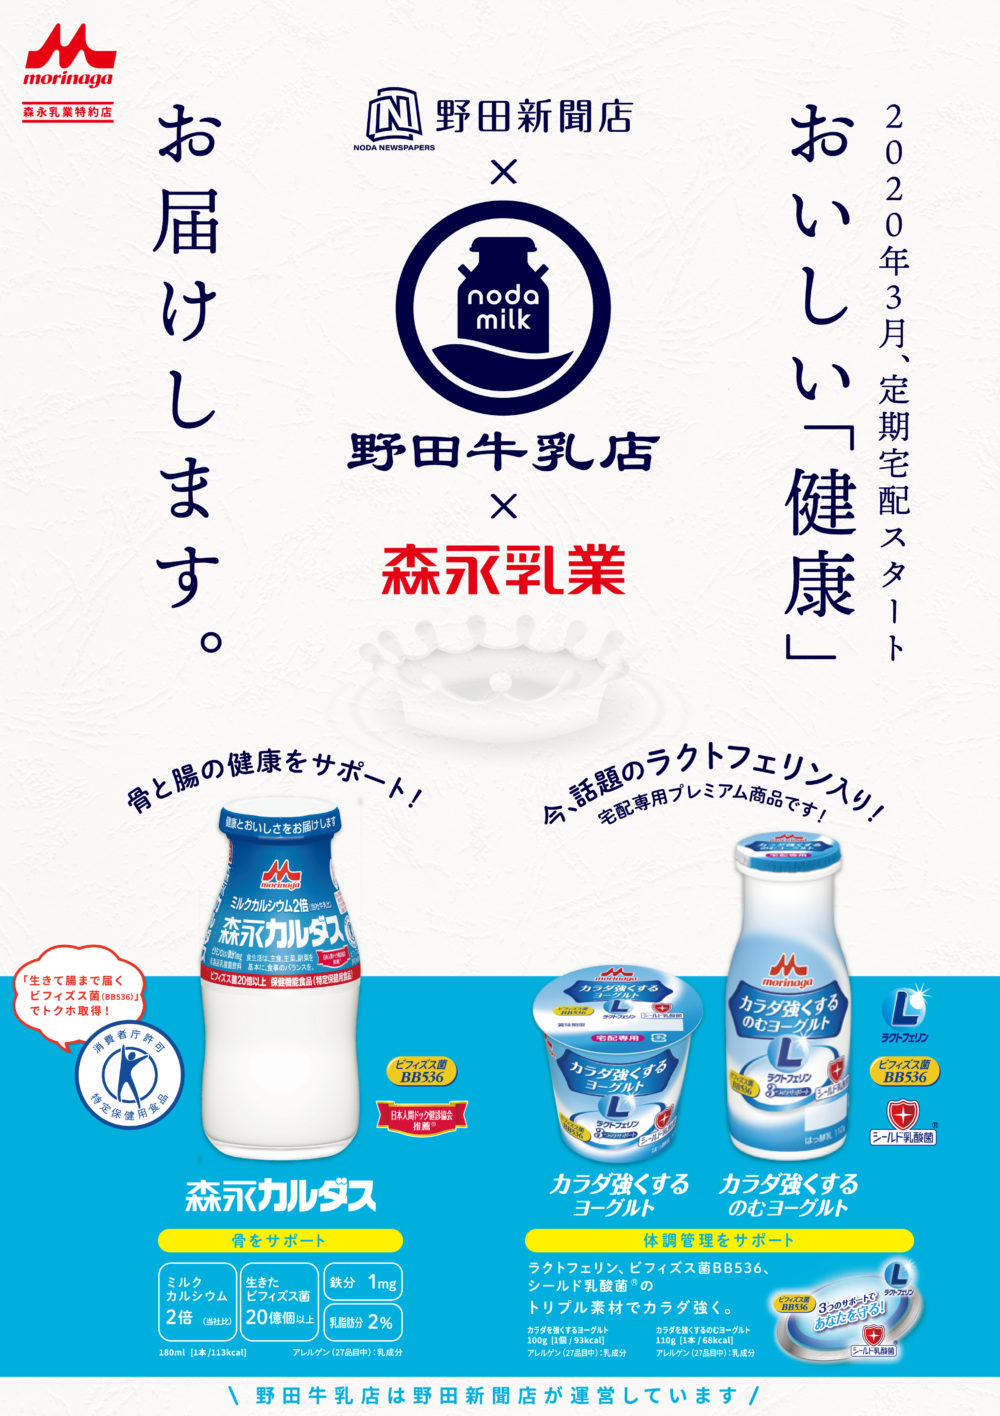 野田牛乳店 オープンのお知らせ 最新情報 野田新聞店からのお知らせ 商品情報 トピックス